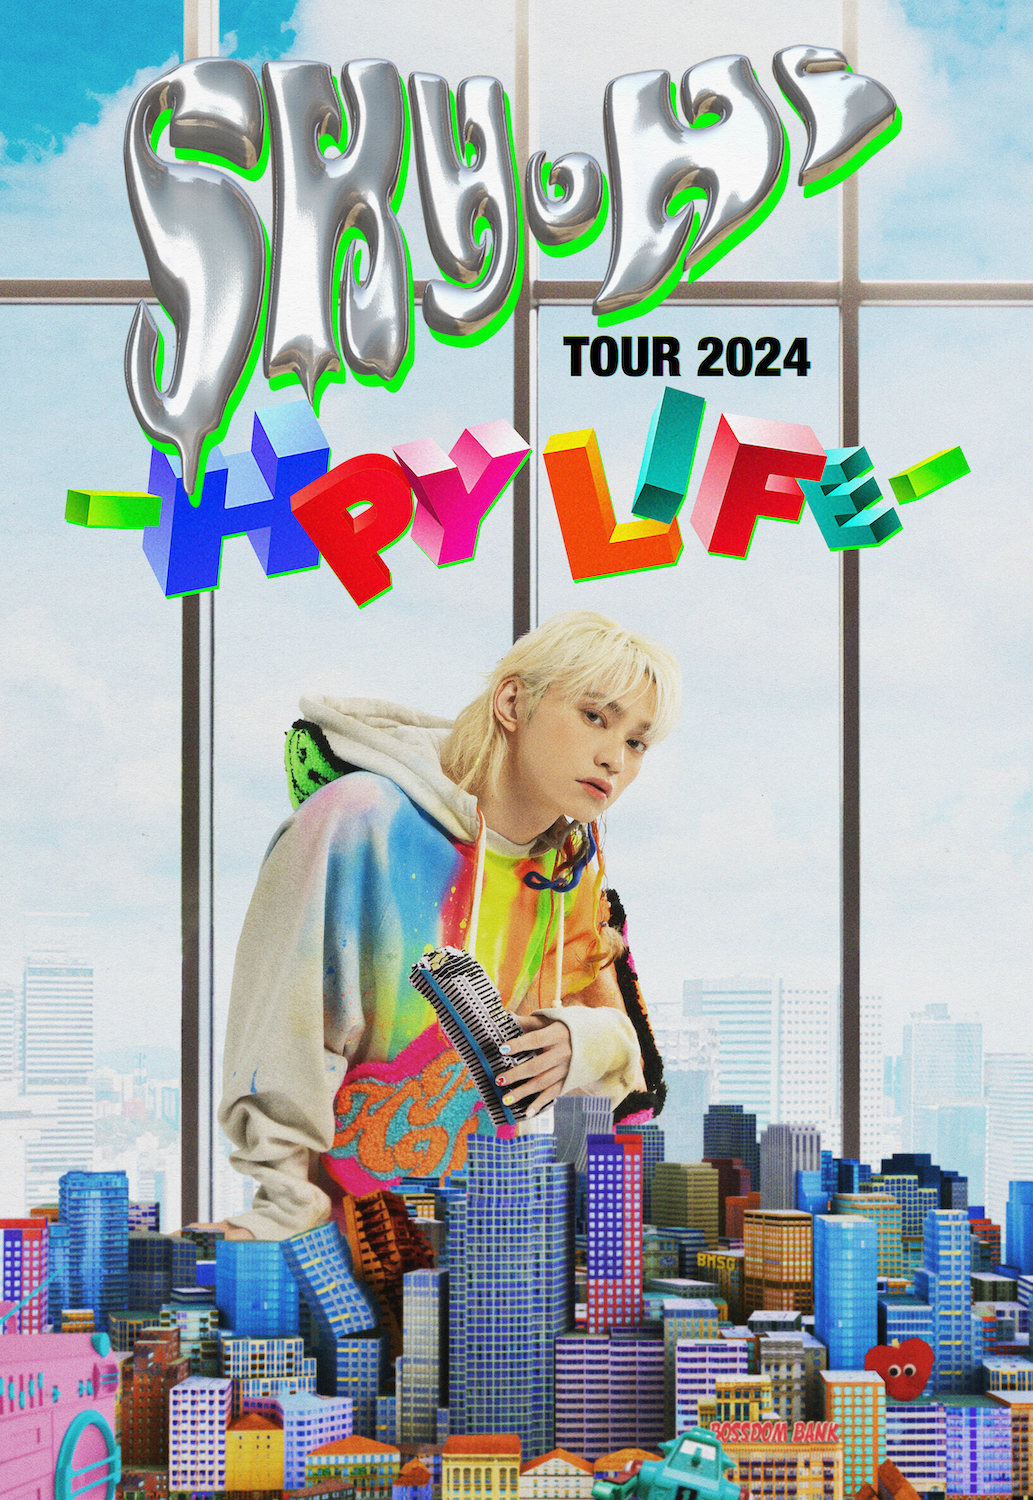 SKY-HI TOUR 2024 -HPY LIFE-